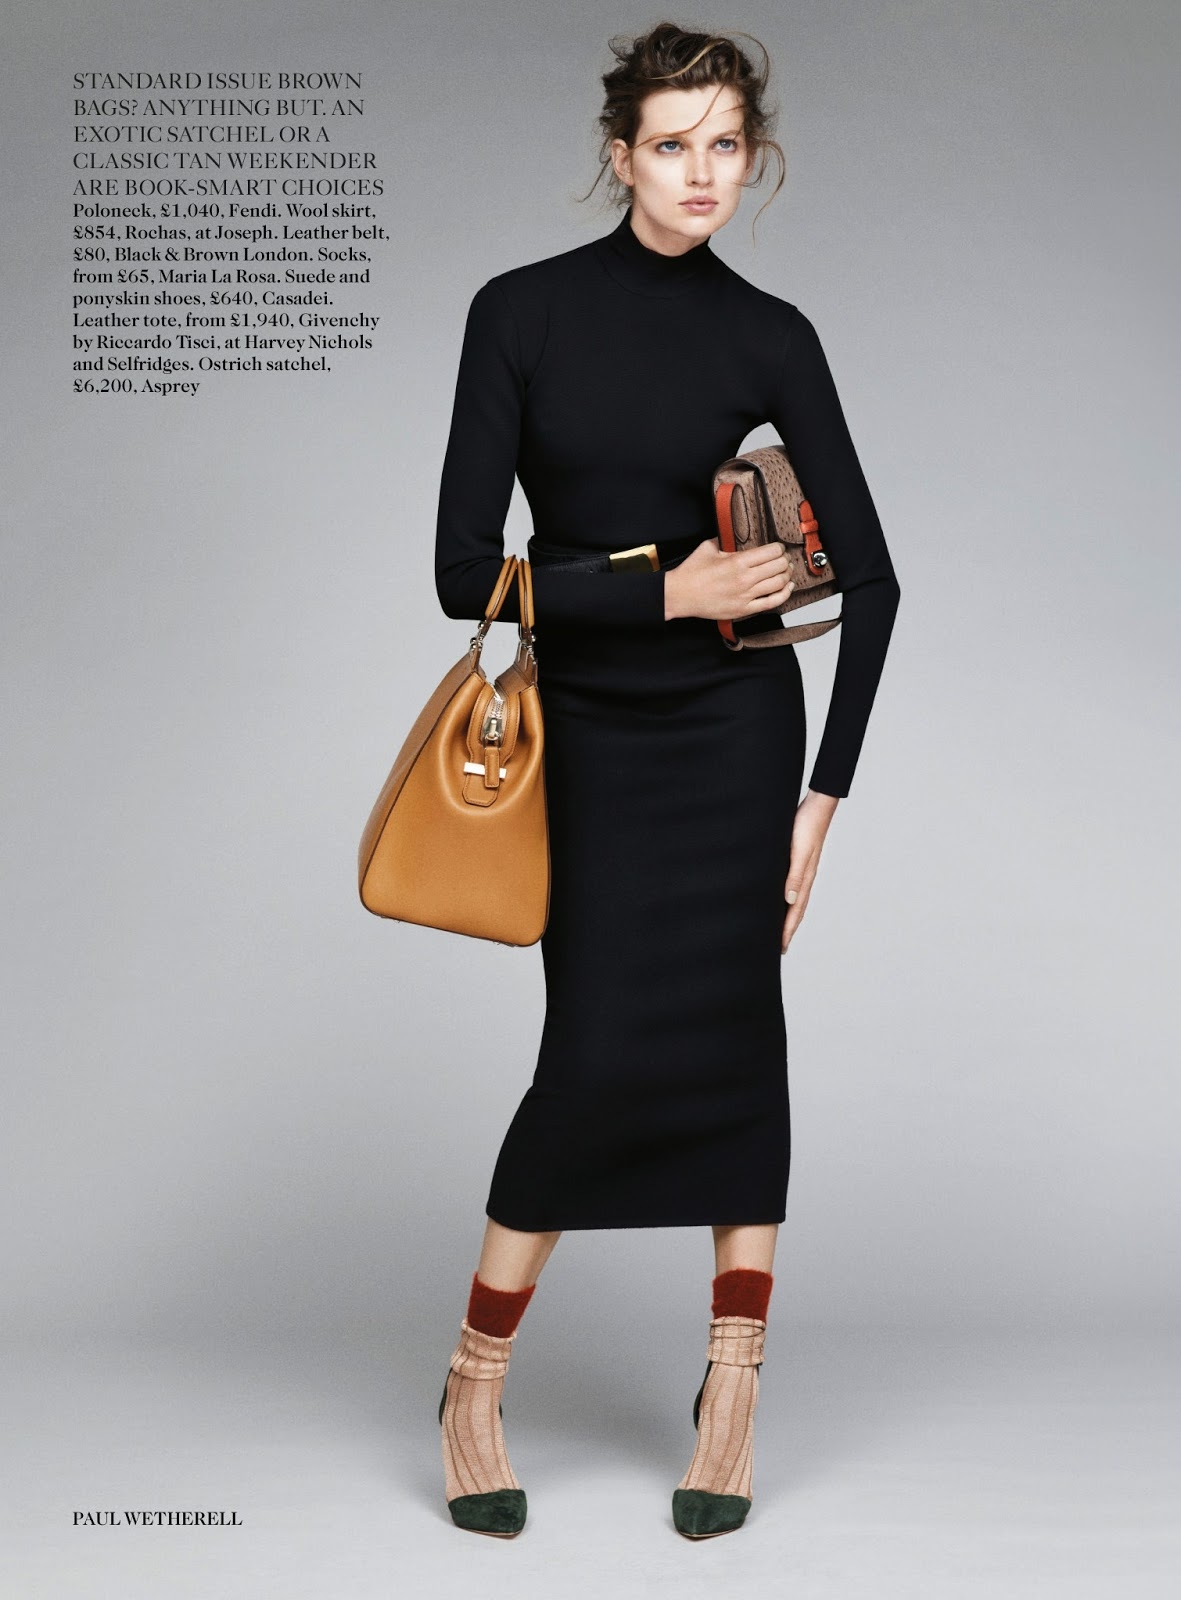 Bette Franke Models the Chanel Hula Hoop Bag for Vogue Japan's July 2013  Cover – Fashion Gone Rogue